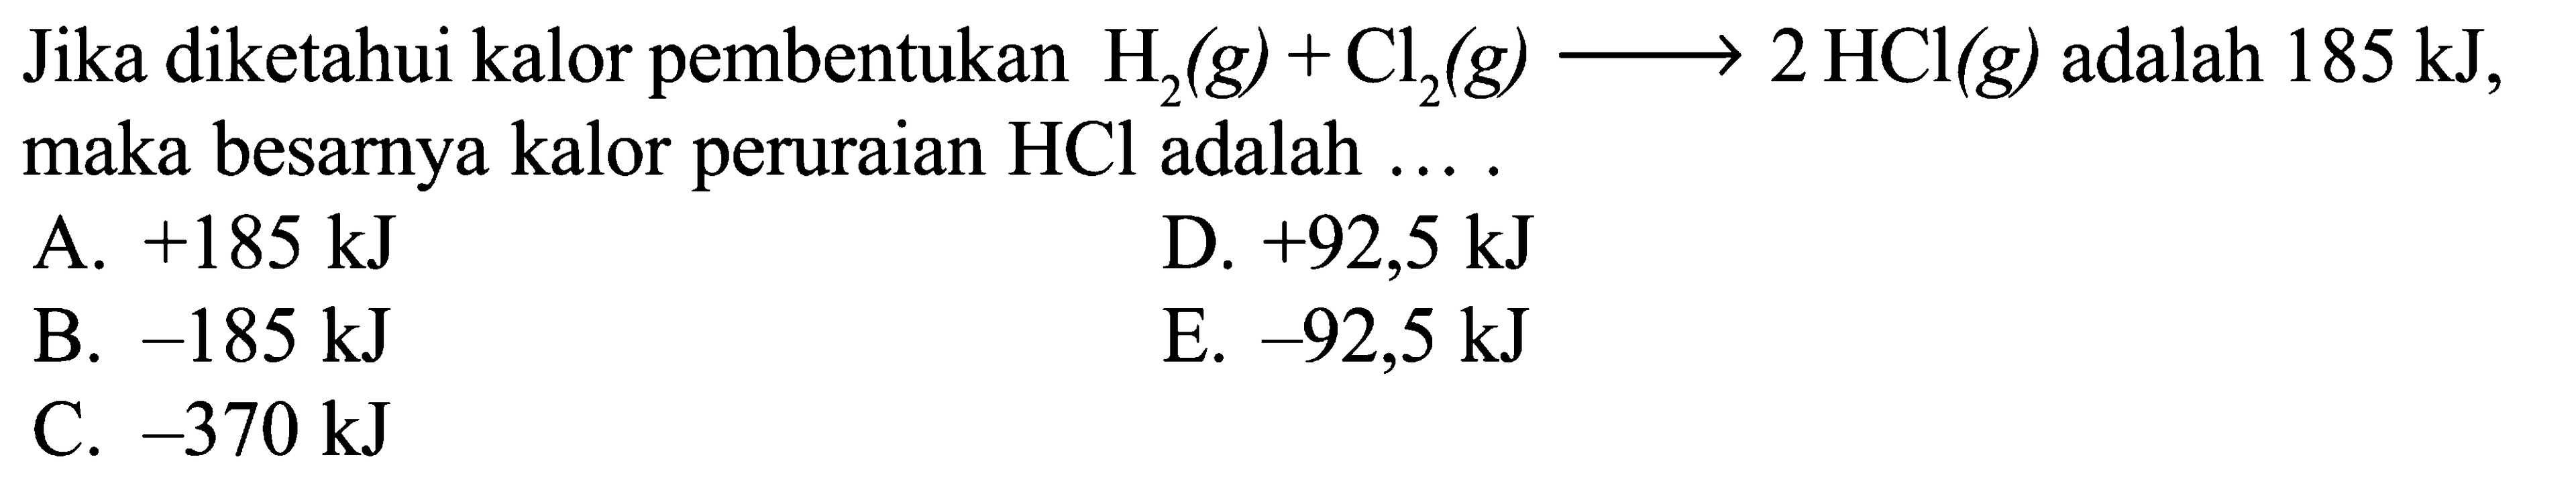 Jika diketahui kalor pembentukan H2 (g) + Cl2 (g) -> 2 HCl (g) adalah 185 kJ, maka besarnya kalor peruraian HCL adalah .....